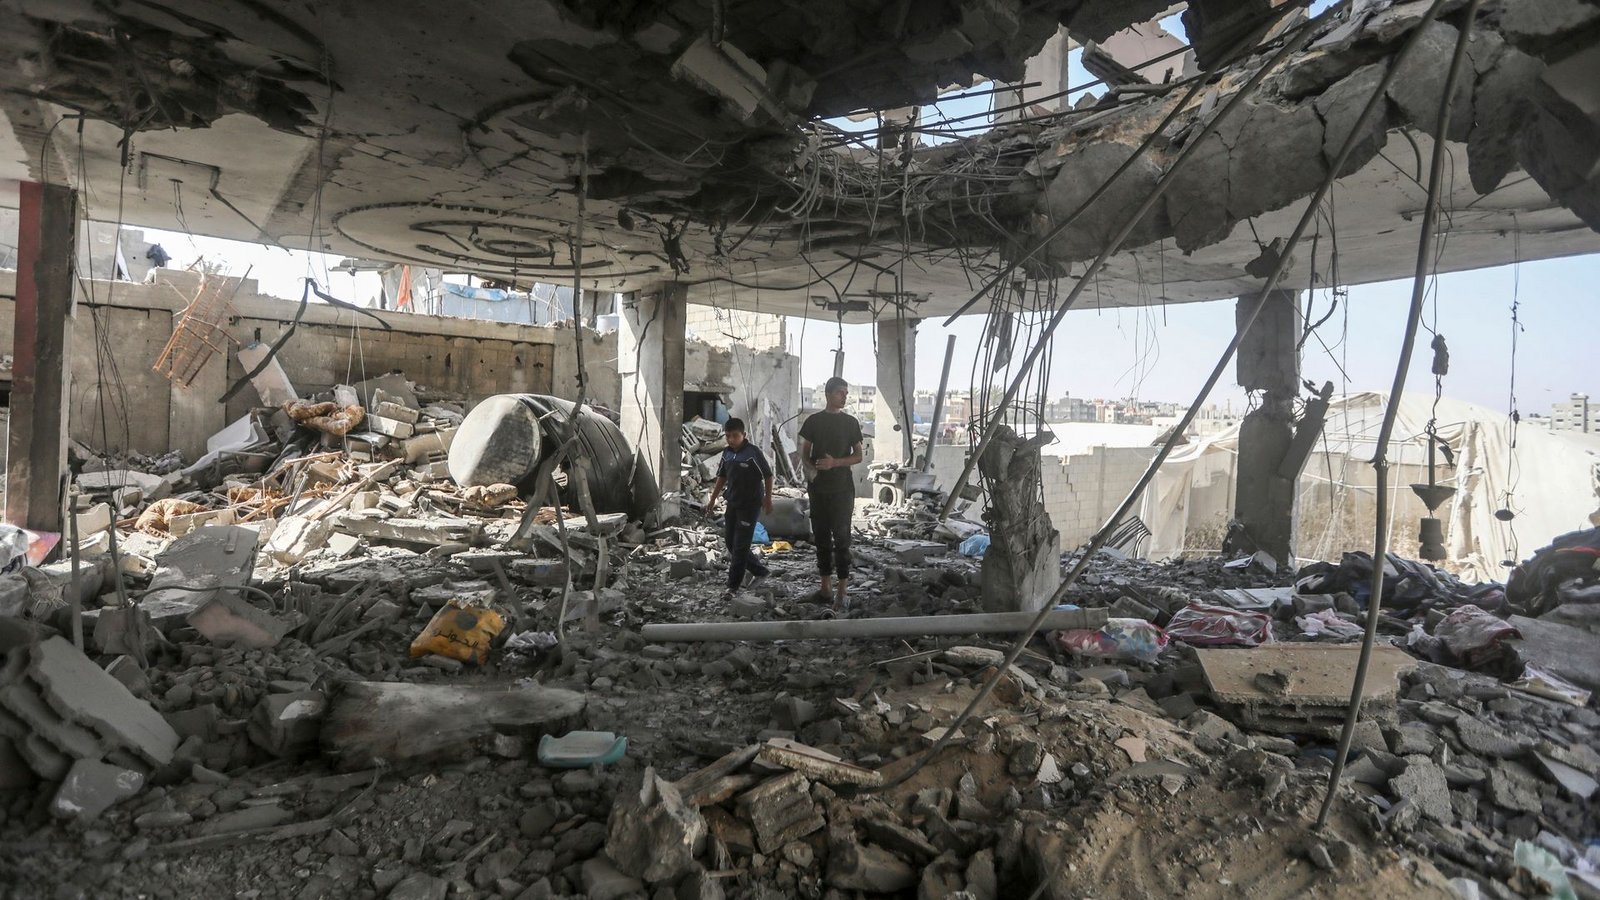 Palästinenser stehen in den Trümmern eines Hauses nach einem israelischen Luftangriff, bei dem mehrere Menschen getötet wurden.Foto: Ismael Abu Dayyah/AP/dpa